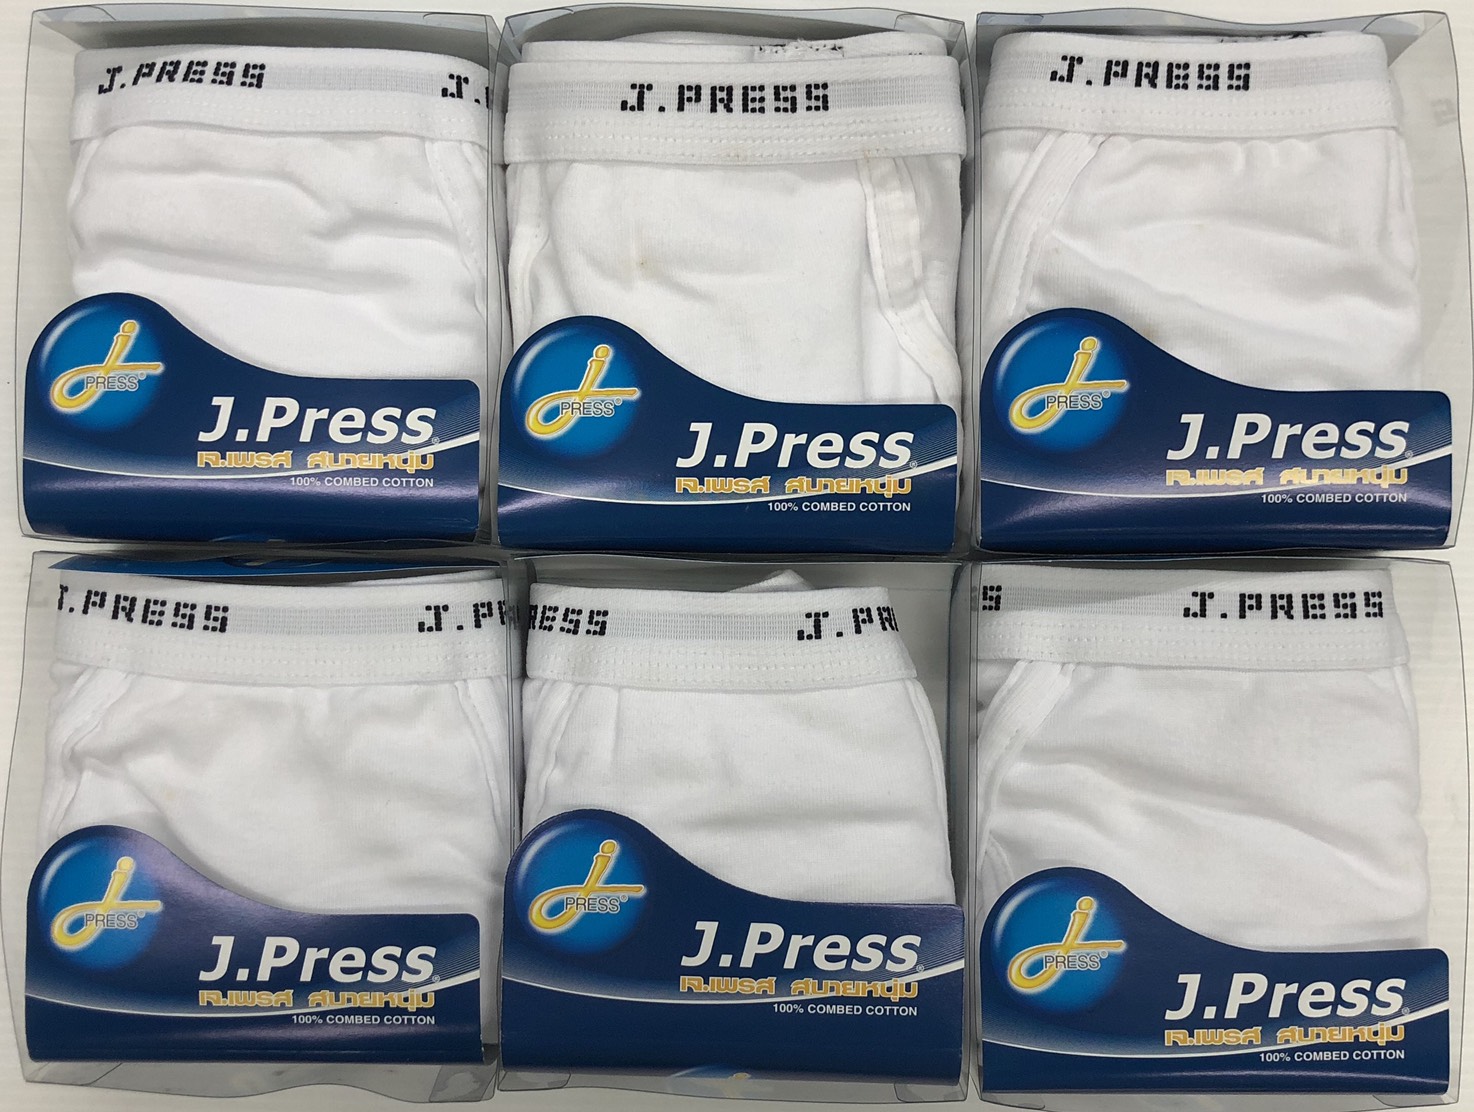 J.Press กางเกงในชาย (6 ตัว/set) คละสี แบบเปิดเป้า รุ่นยอดนิยม กางเกงใน ชาย เจเพรส เจเพลส รุ่น 1202 สินค้าขายดี